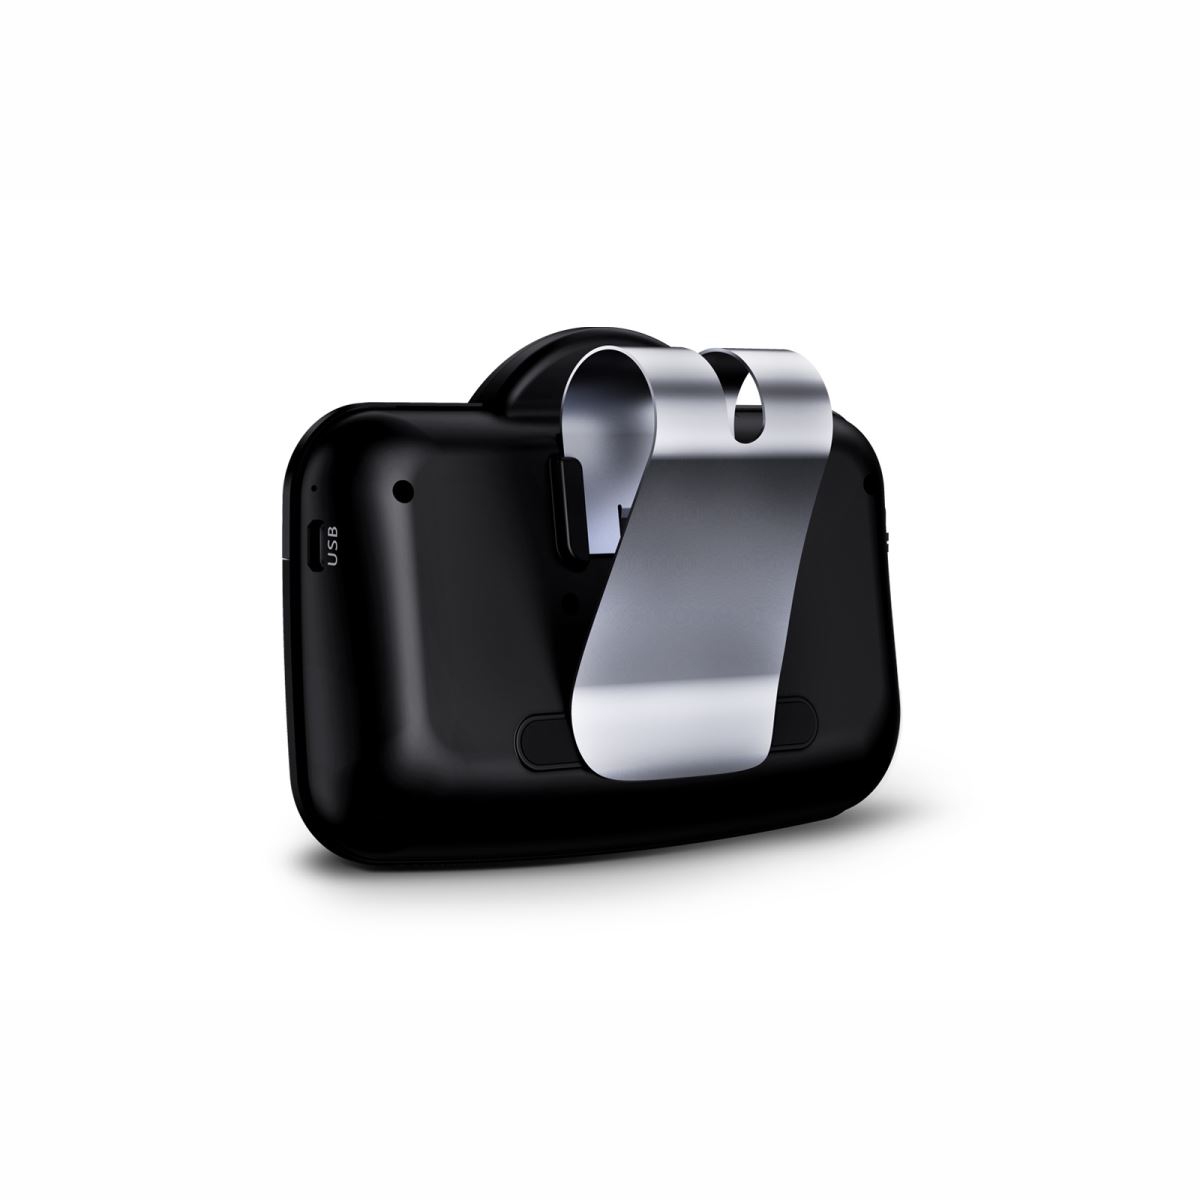 Car Kit Xblitz X1000 Professional, wireless, sistem handsfree portabil cu Bluetooth, negru